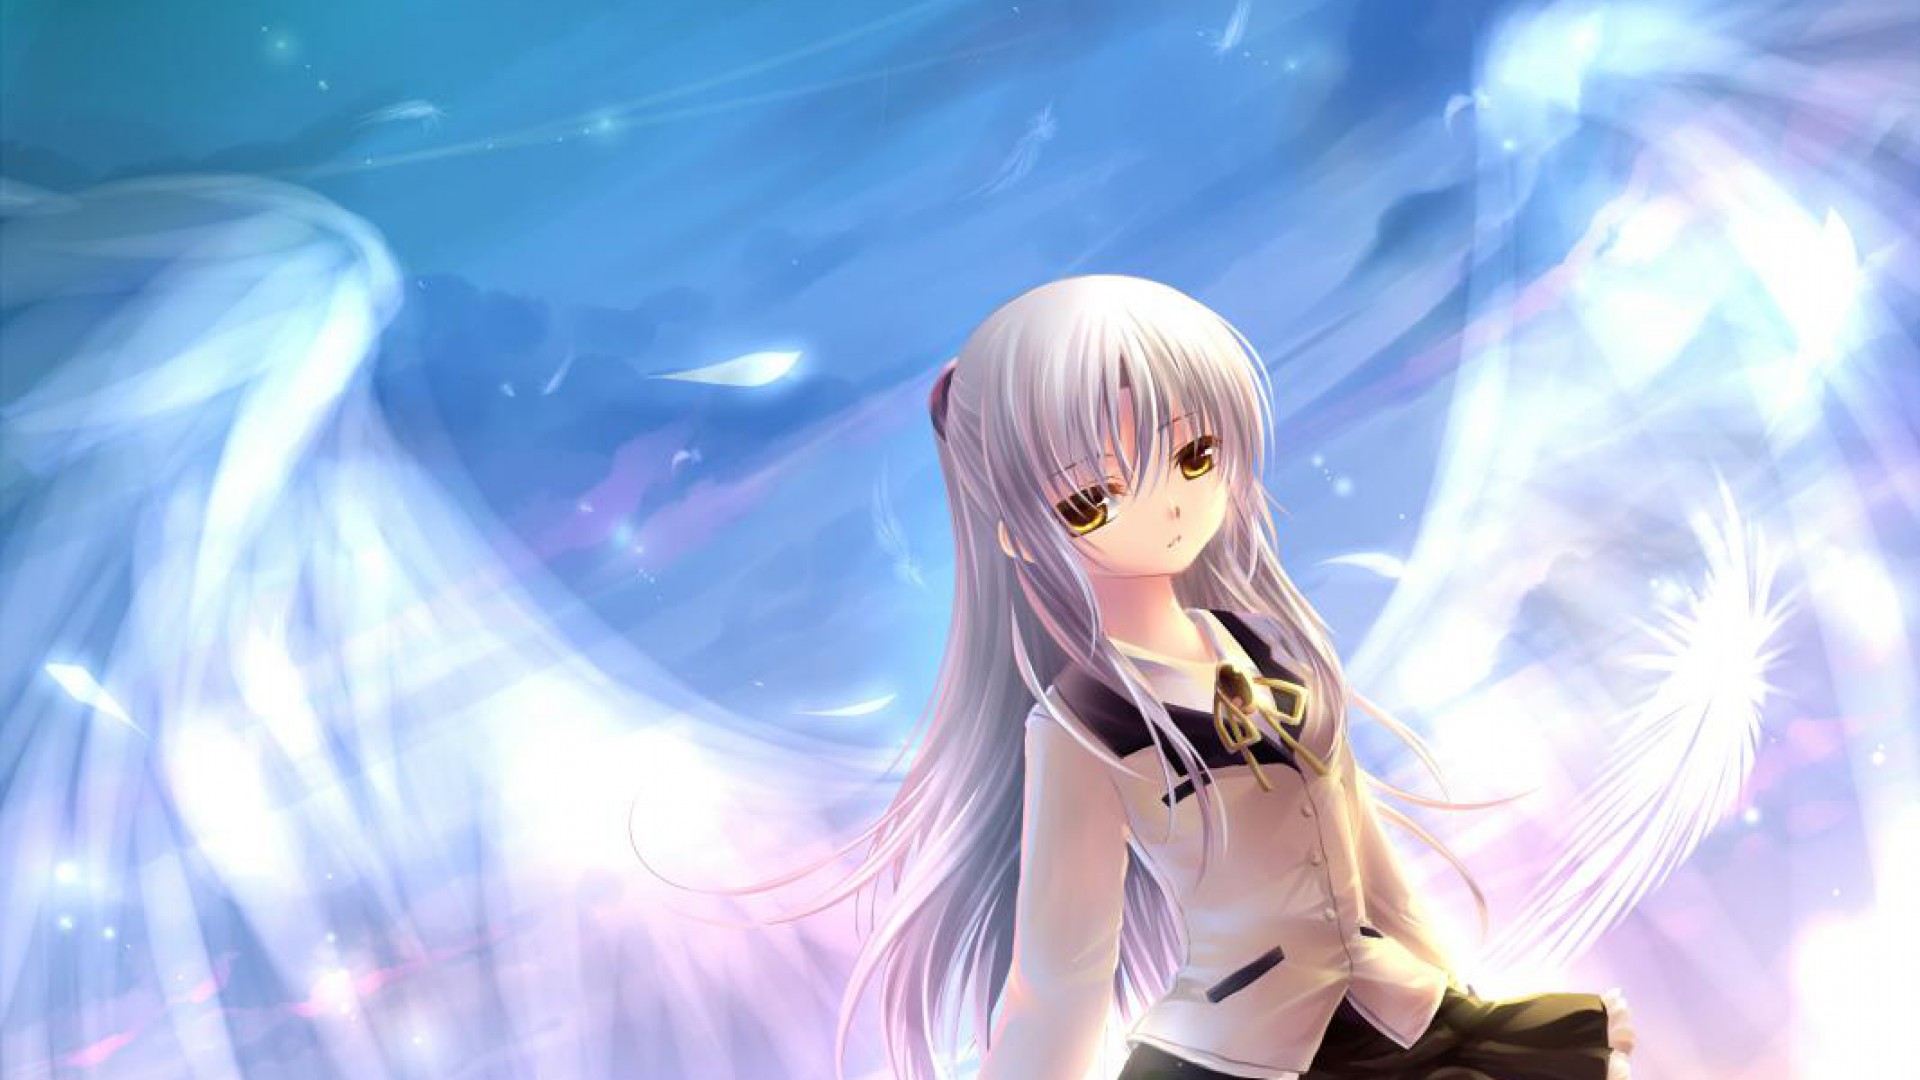 Kanade Tachibana - Little Angel Anime , HD Wallpaper & Backgrounds